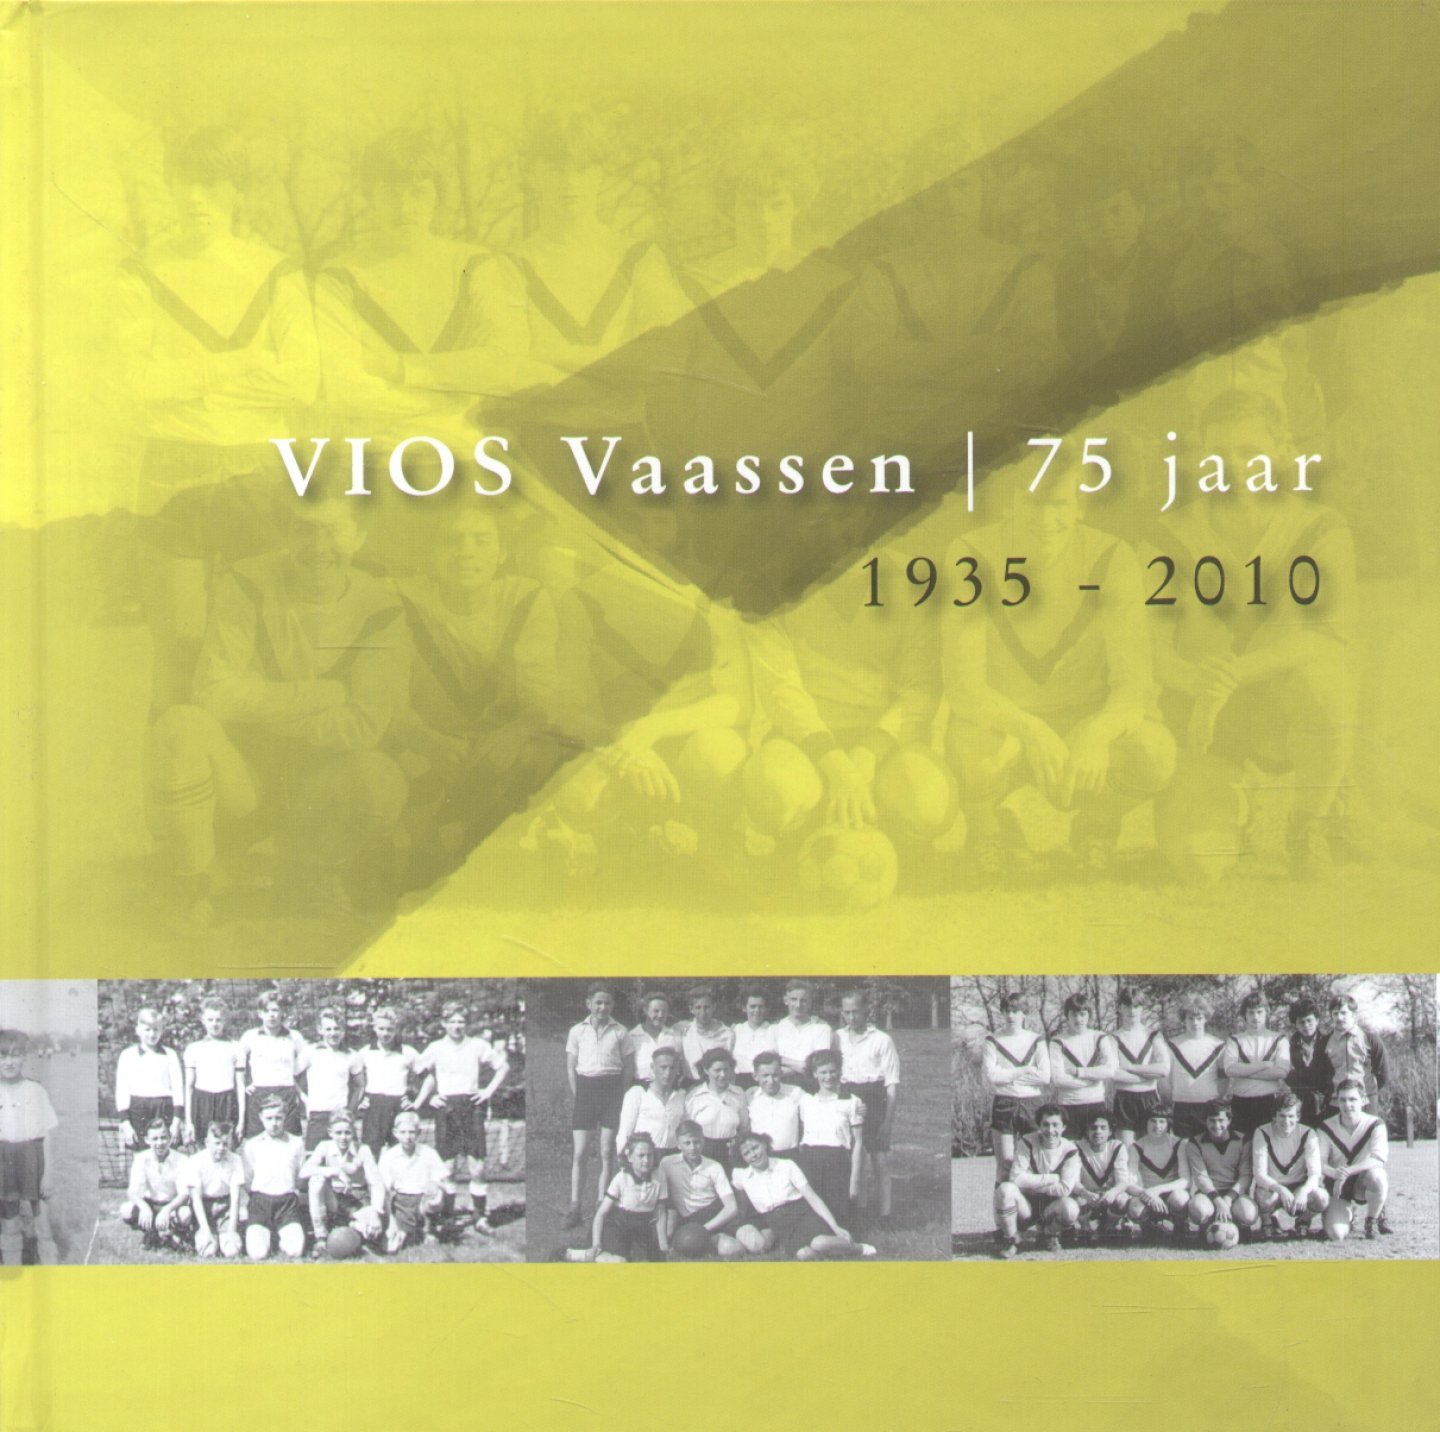 IJzerman-Nijkamp, Gees (redactie e.a.) - VIOS Vaassen 75 jaar: 1935 - 2010